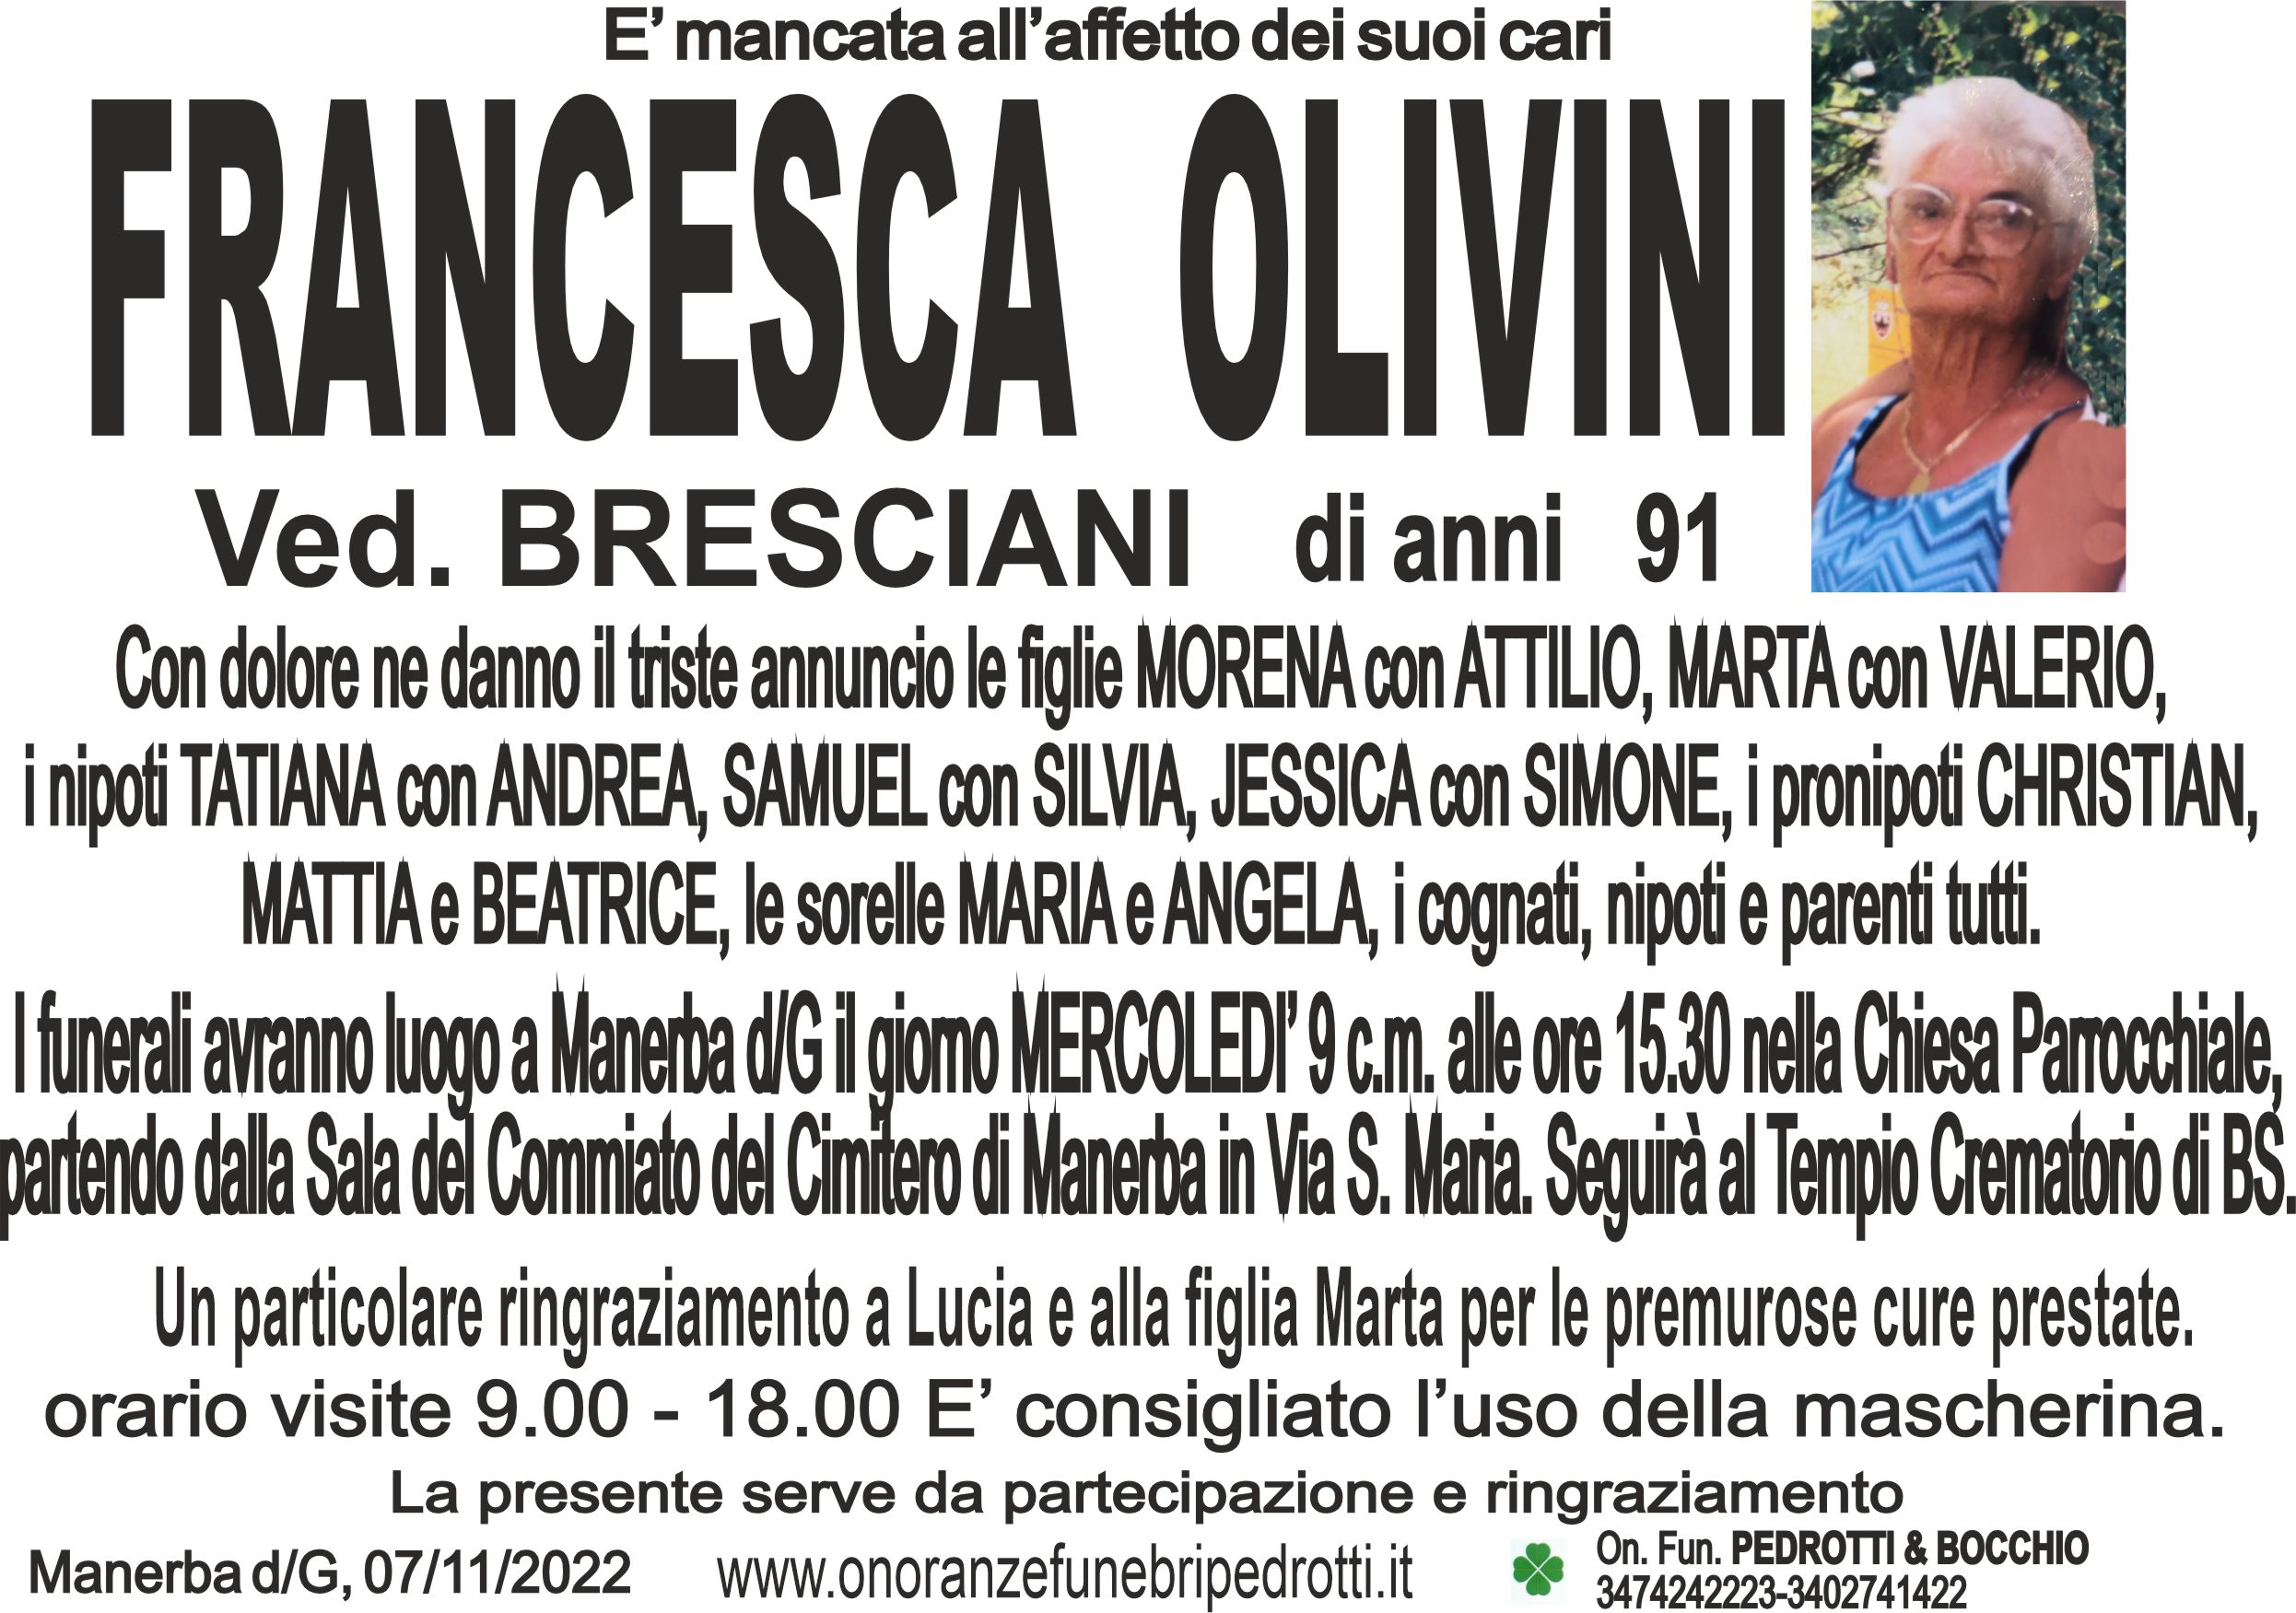 Al momento stai visualizzando Olivini Francesca